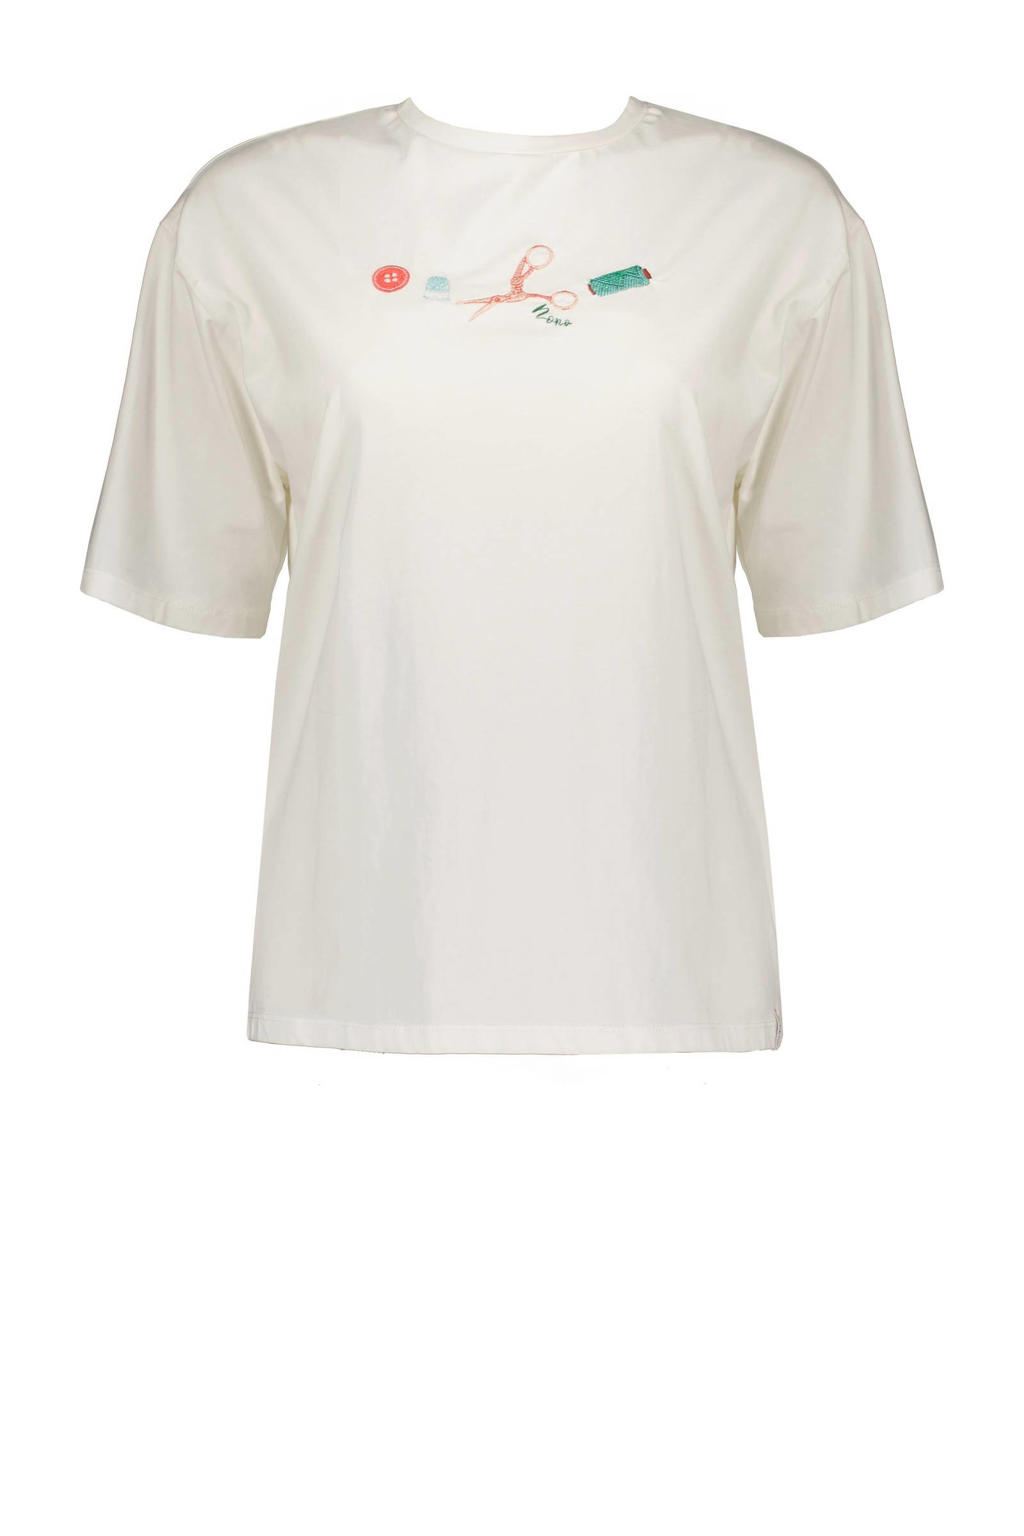 Witte dames T-shirt X Bodil Jane van katoen met printopdruk, korte mouwen en ronde hals